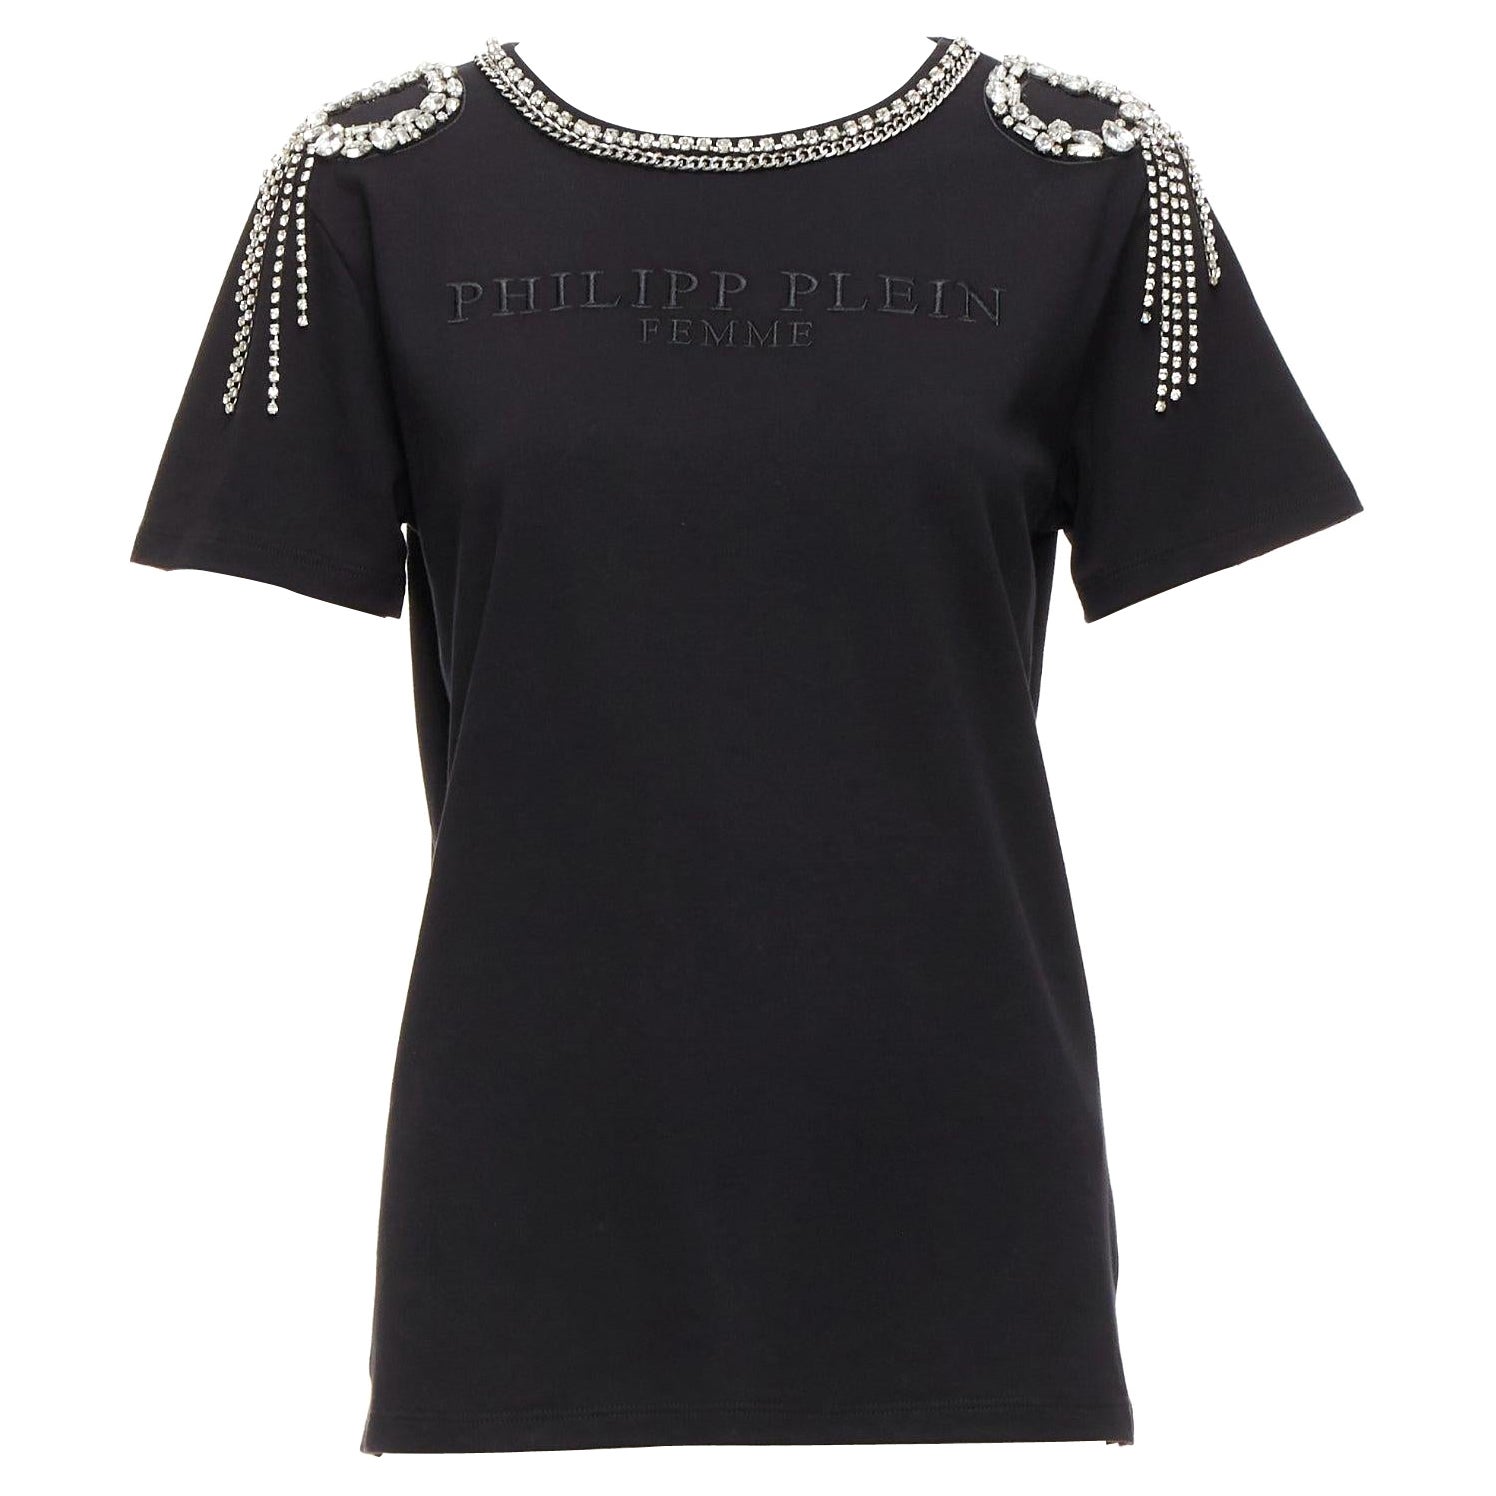 PHILLIP PLEIN FEMME - T-shirt noir avec broderie et franges en cristal clair XS en vente